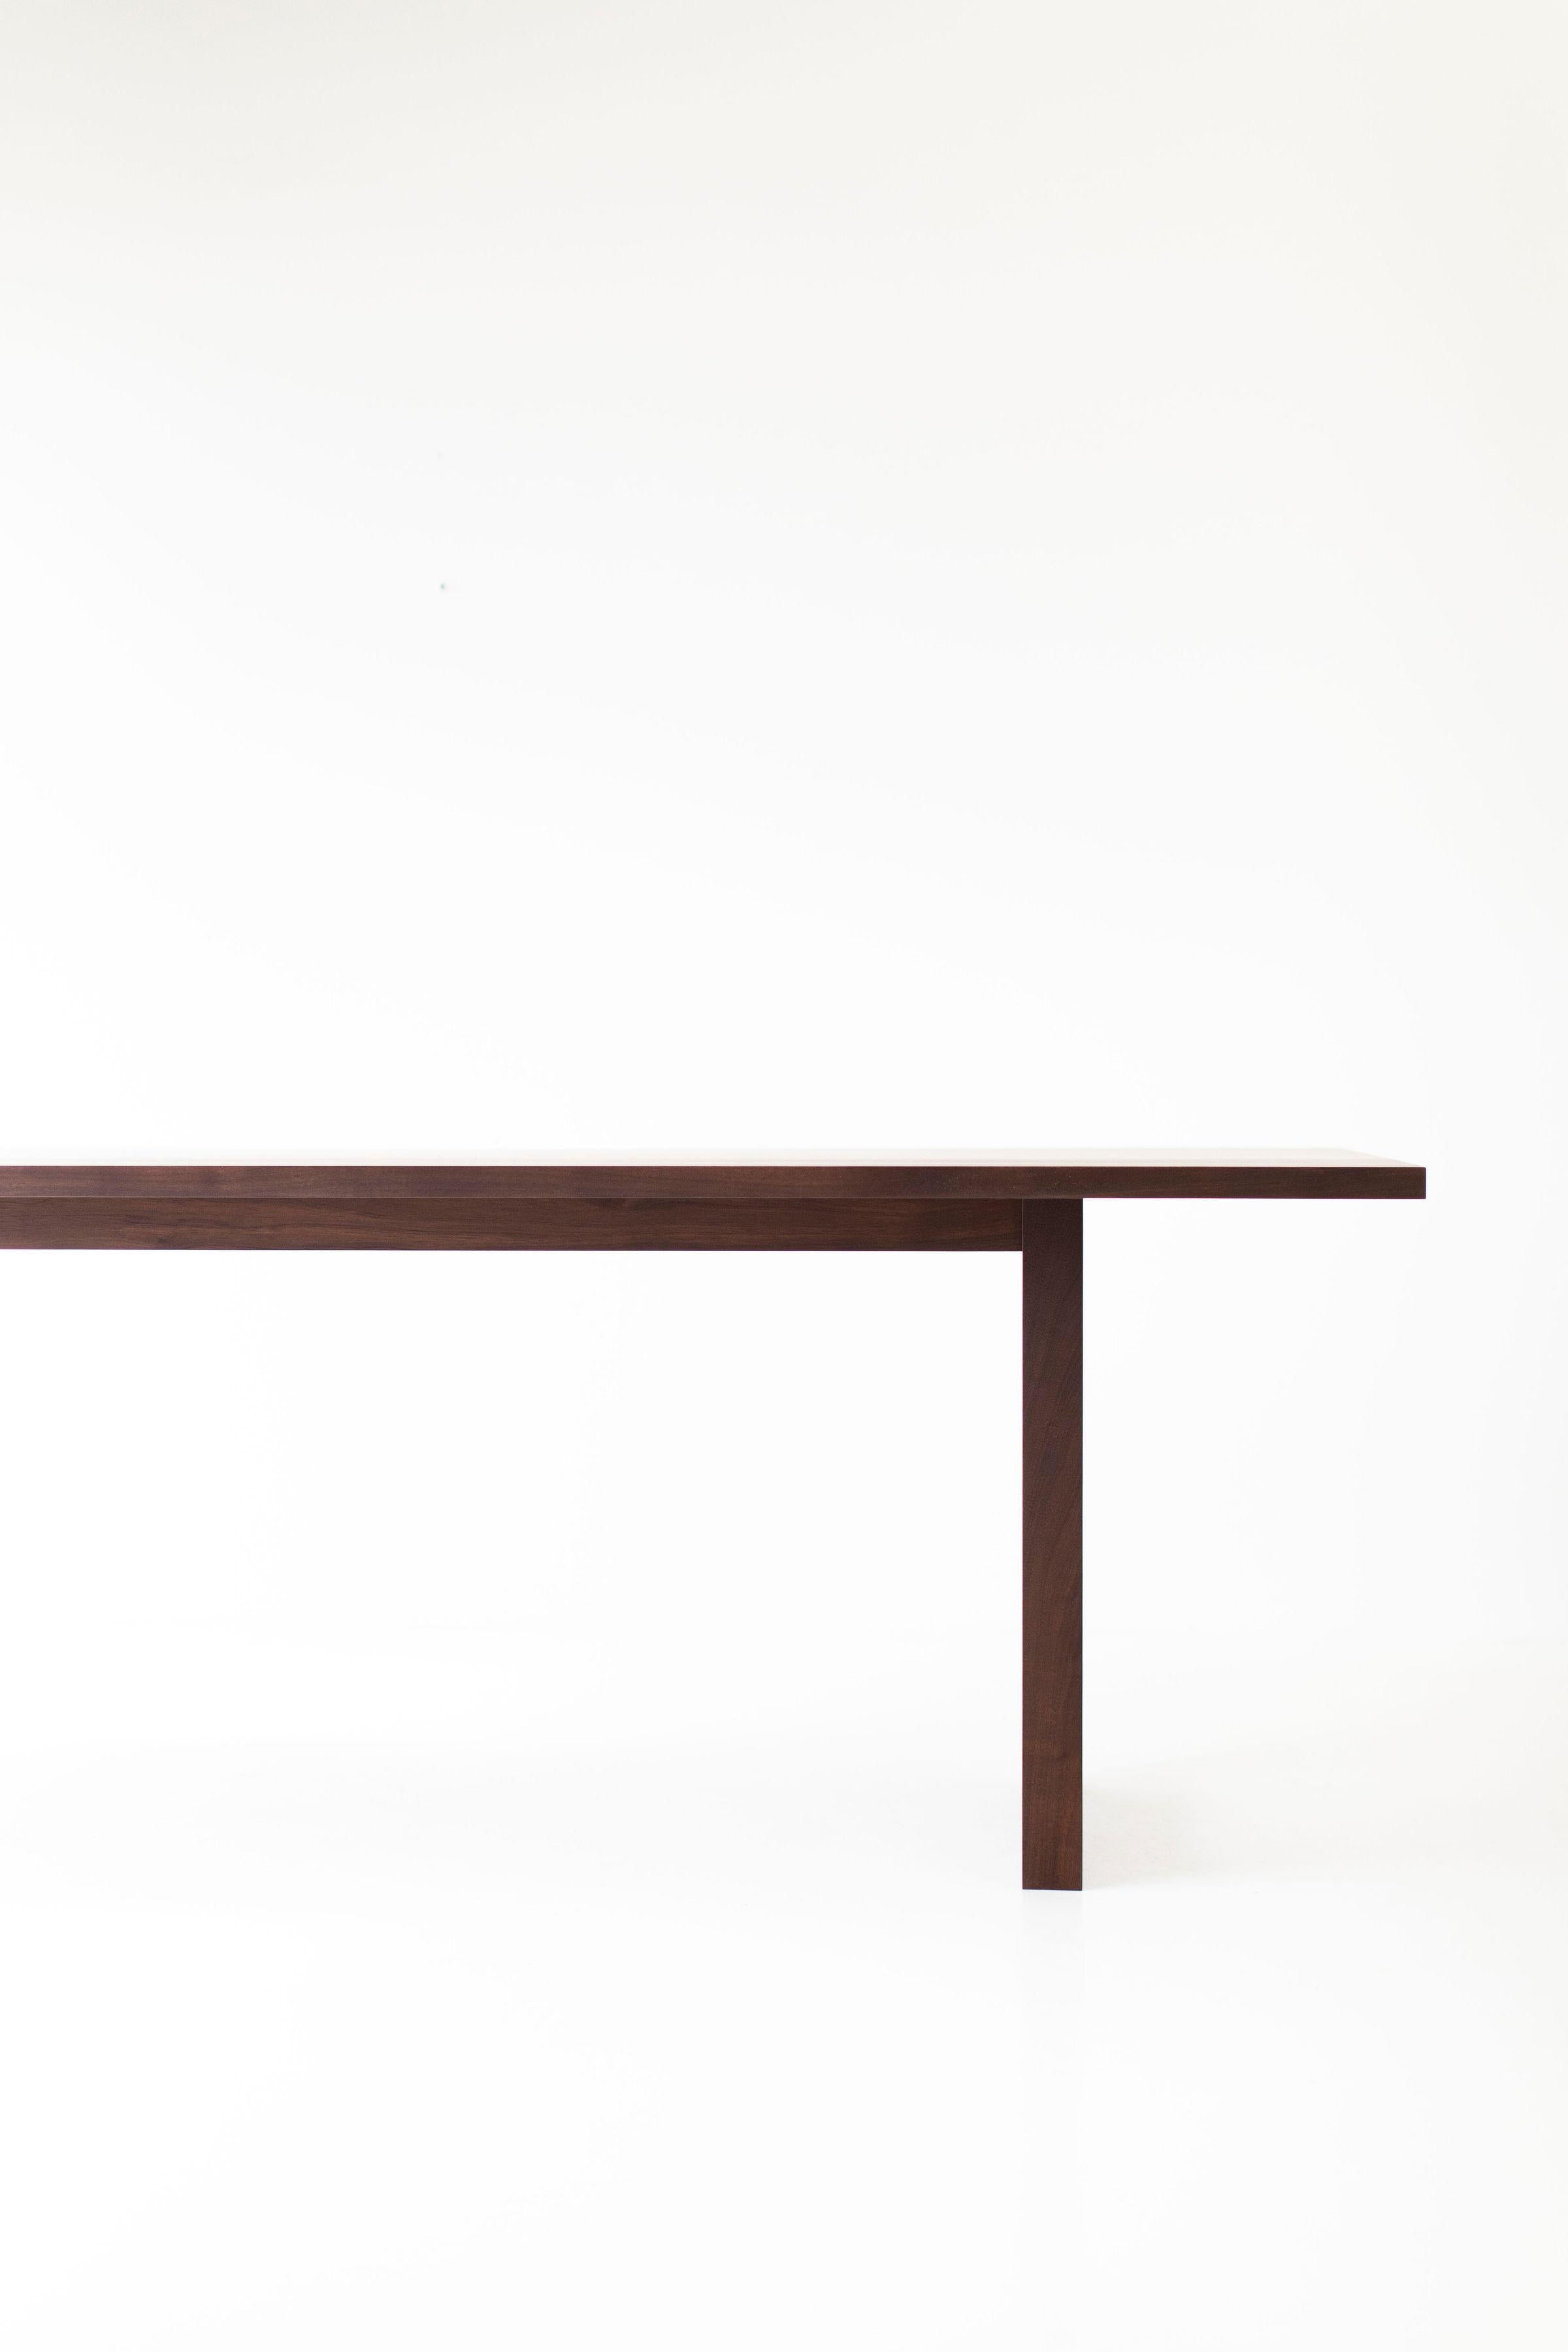 Dieser schlichte, moderne Esstisch aus Nussbaumholz wird im Herzen von Ohio aus lokalem Holz hergestellt. Wir verwenden den Tisch sowohl als Esstisch als auch als Schreibtisch. Jeder Tisch ist aus massivem schwarzem Nussbaumholz handgefertigt und